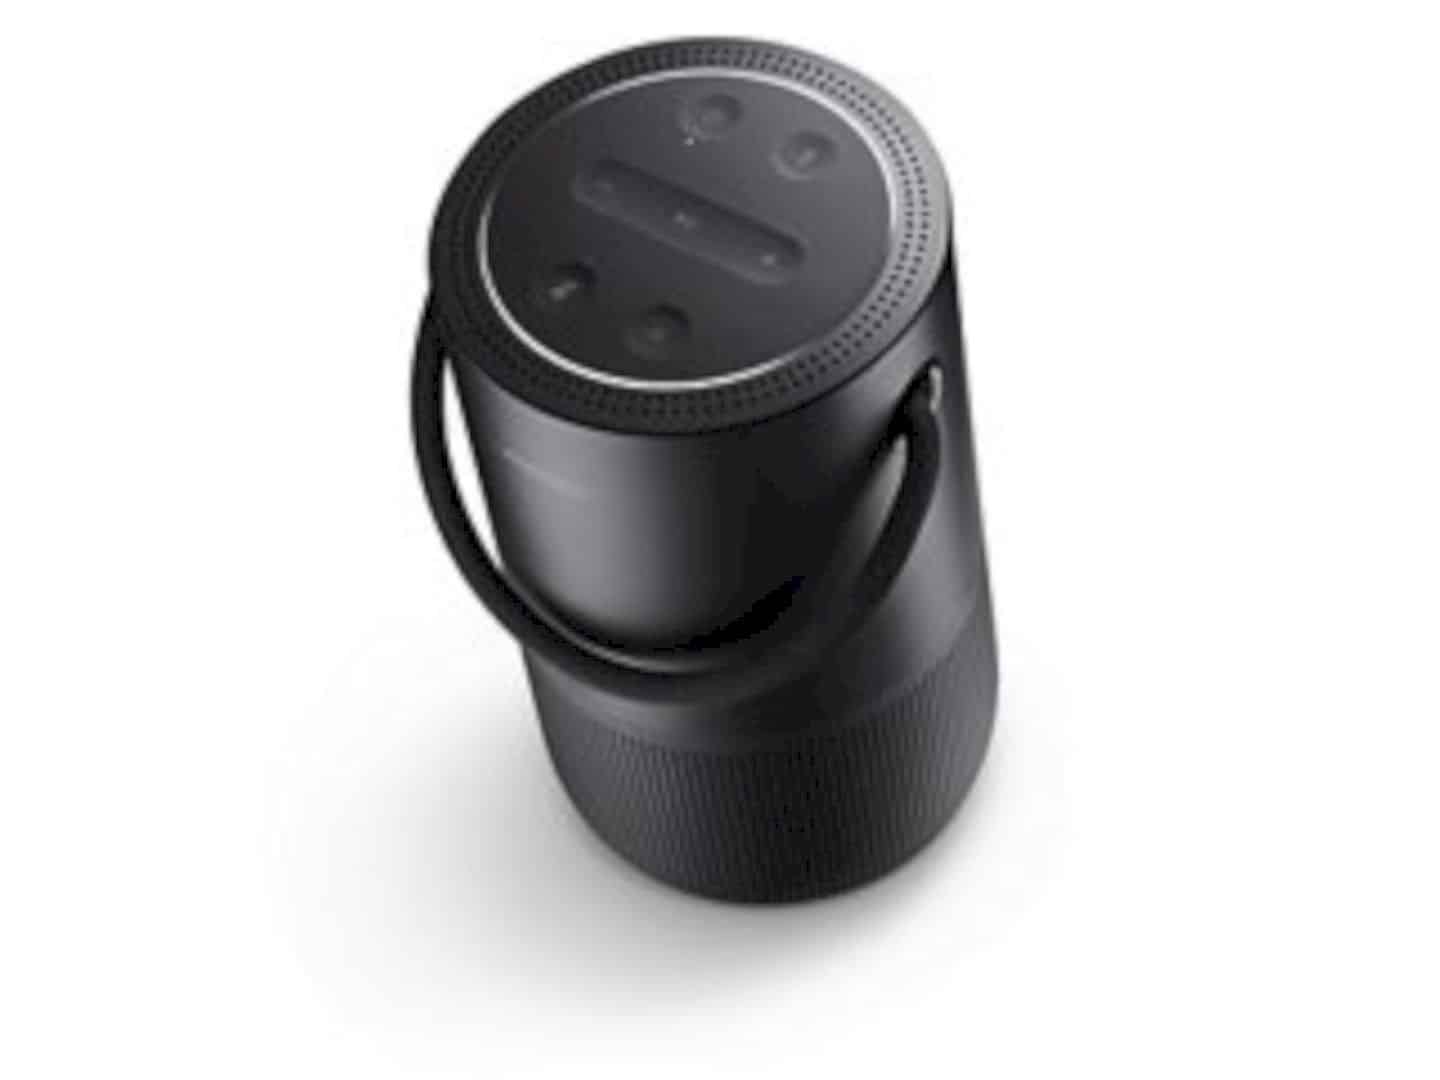 Bose Portable Home Speaker 4